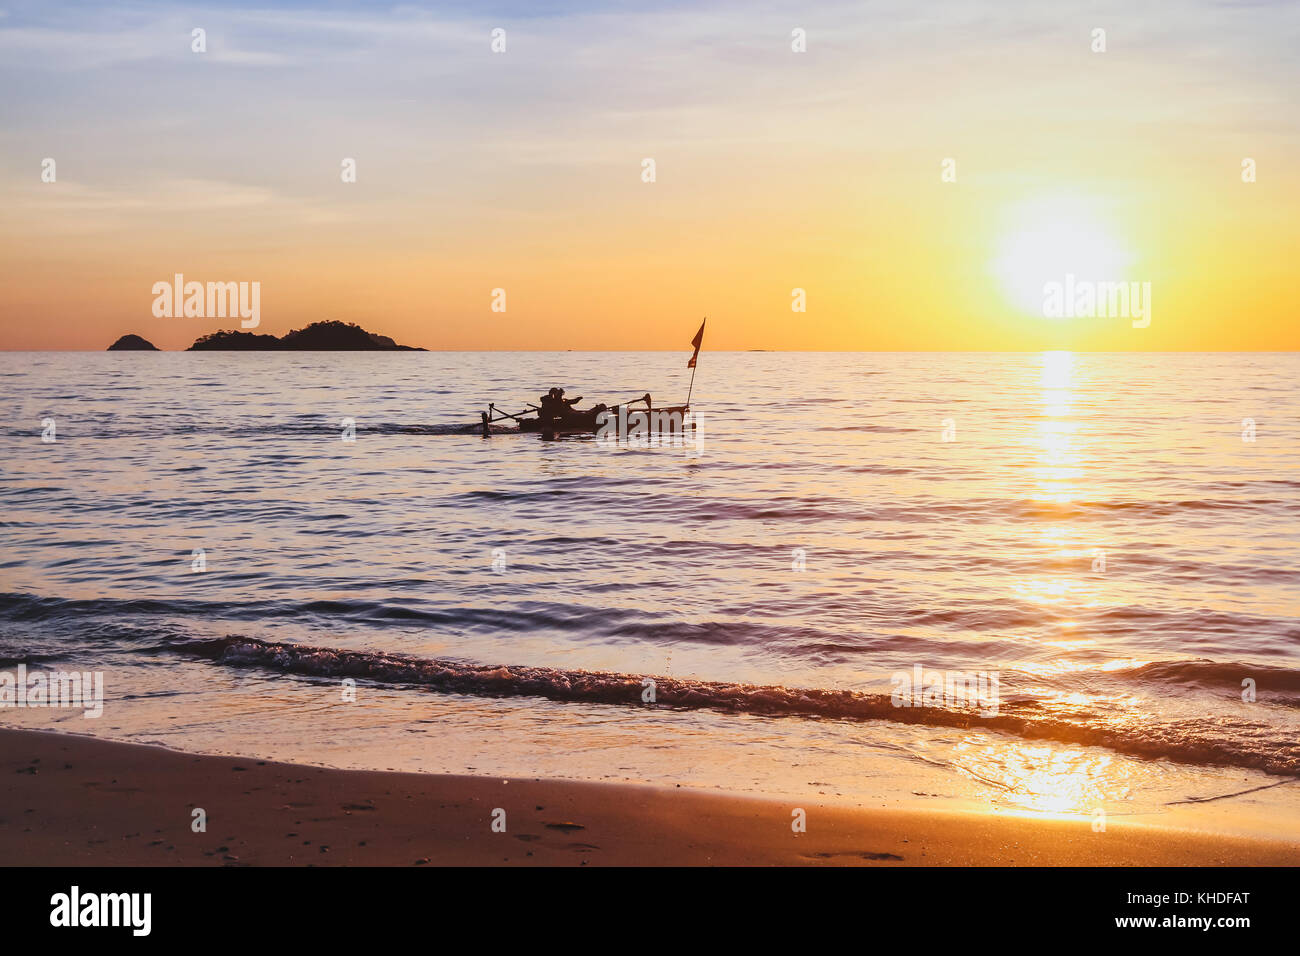 La belle nature, plage exotique au coucher du soleil avec silhouette de bateau de pêcheur, inspirant un paysage tropical background with copy space Banque D'Images